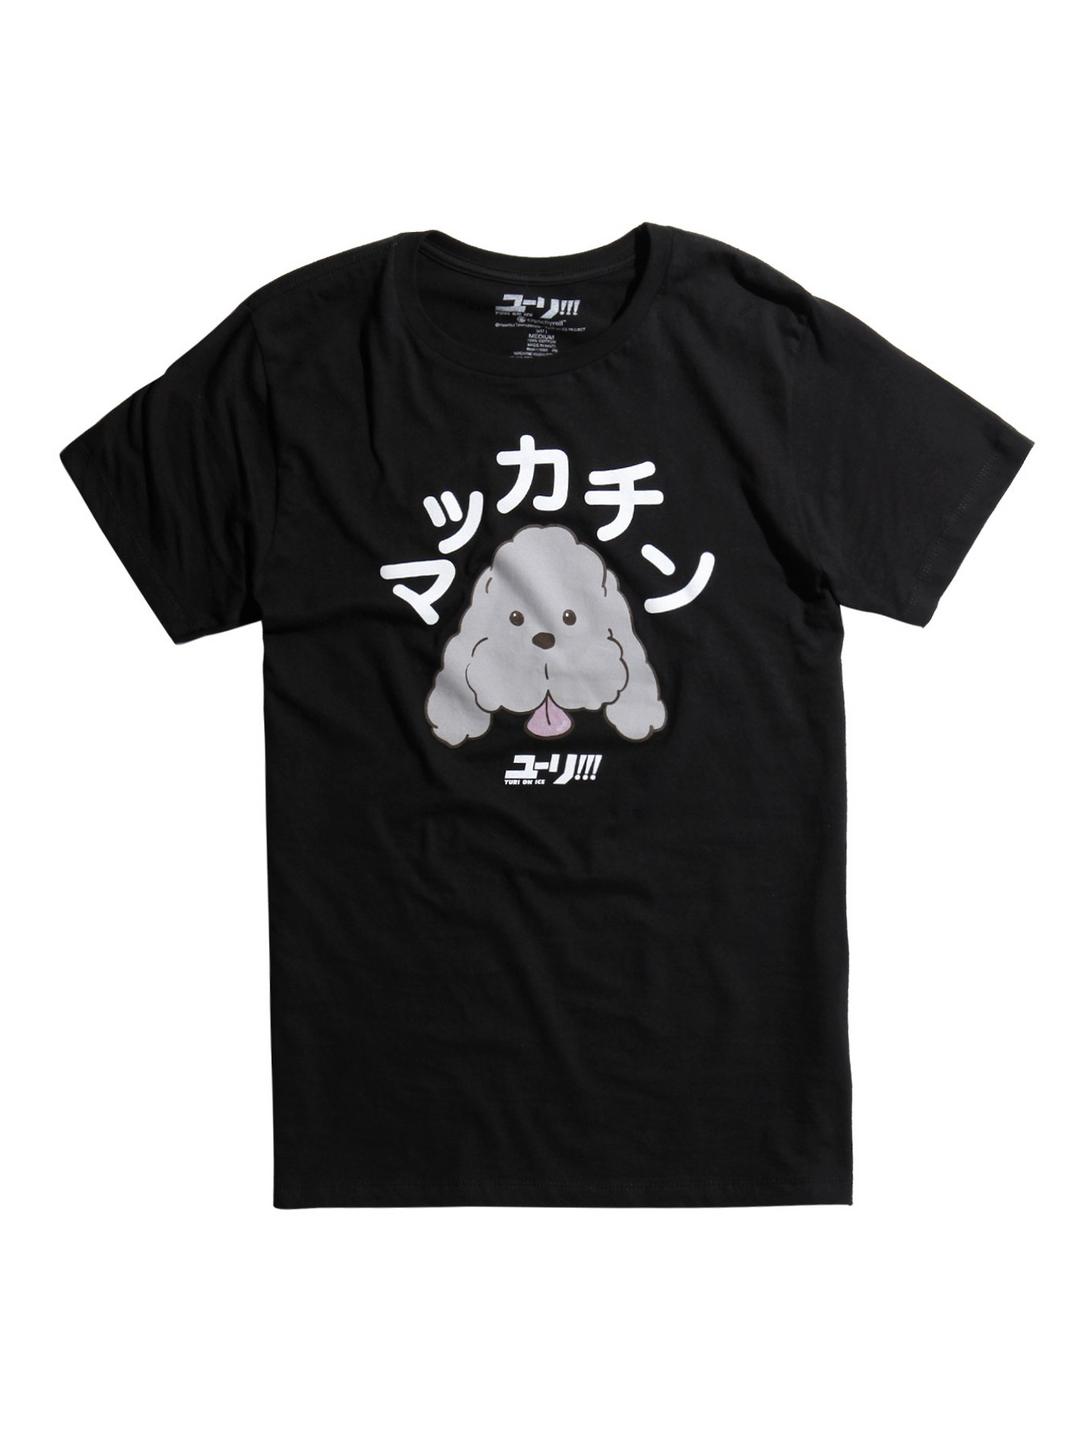 Yuri!!! On Ice Makkachin T-Shirt, BLACK, hi-res